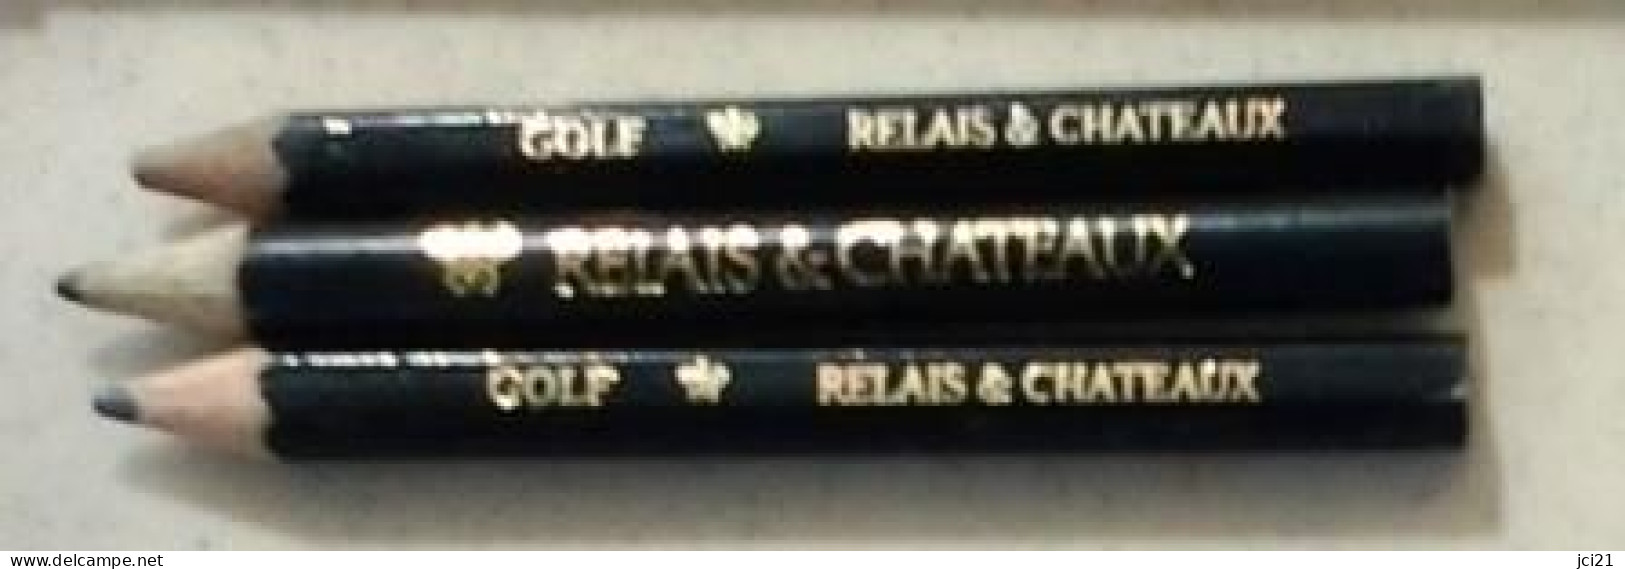 Lot De 3 Crayons " RELAIS & CHATEAUX Et GOLF RELAIS & CHATEAUX " (Bte Stylo) _Di397 - Stylos